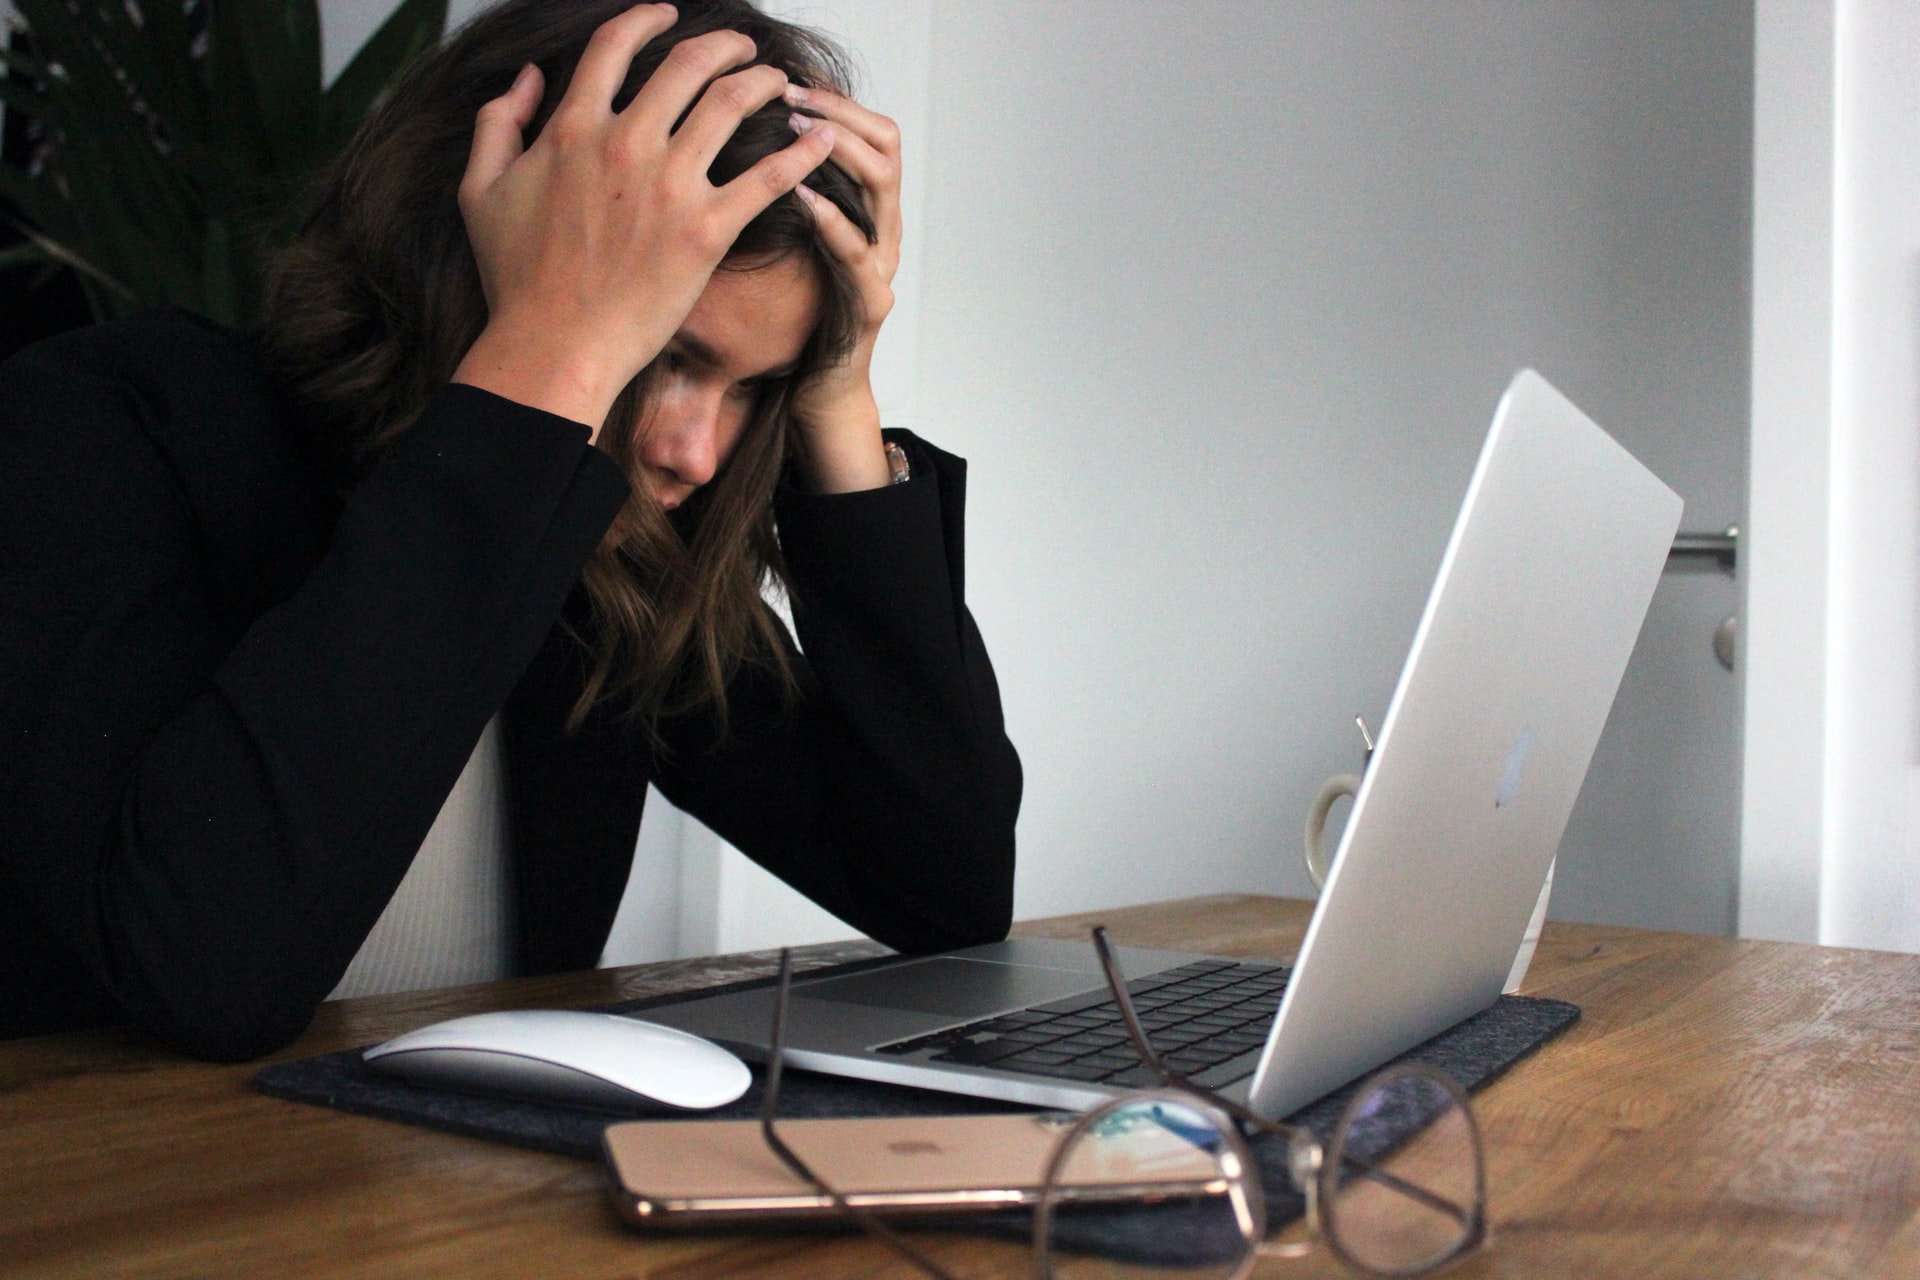 Symbolbild Fatigute: Frau stützt Kopf auf die Hände, während sie vor einem Laptop sitzt, Photo by Elisa Ventur on Unsplash